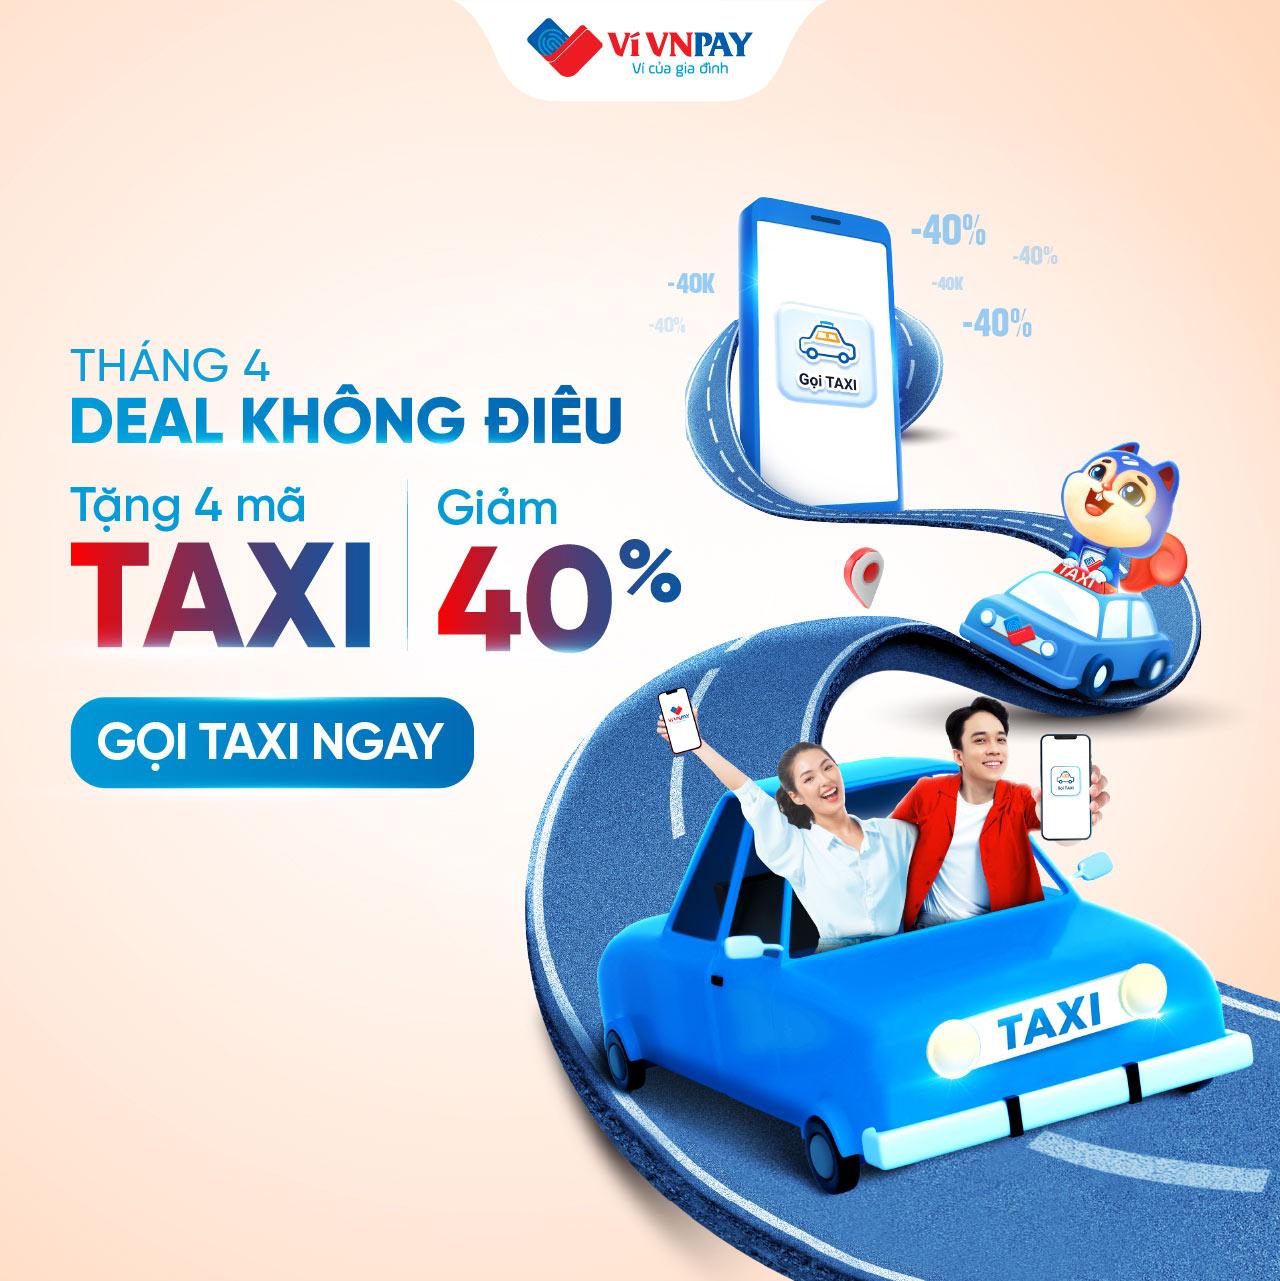 “Deal hời” tháng 4: Gọi taxi trên ví VNPAY, hưởng ngay ưu đãi giảm 40%